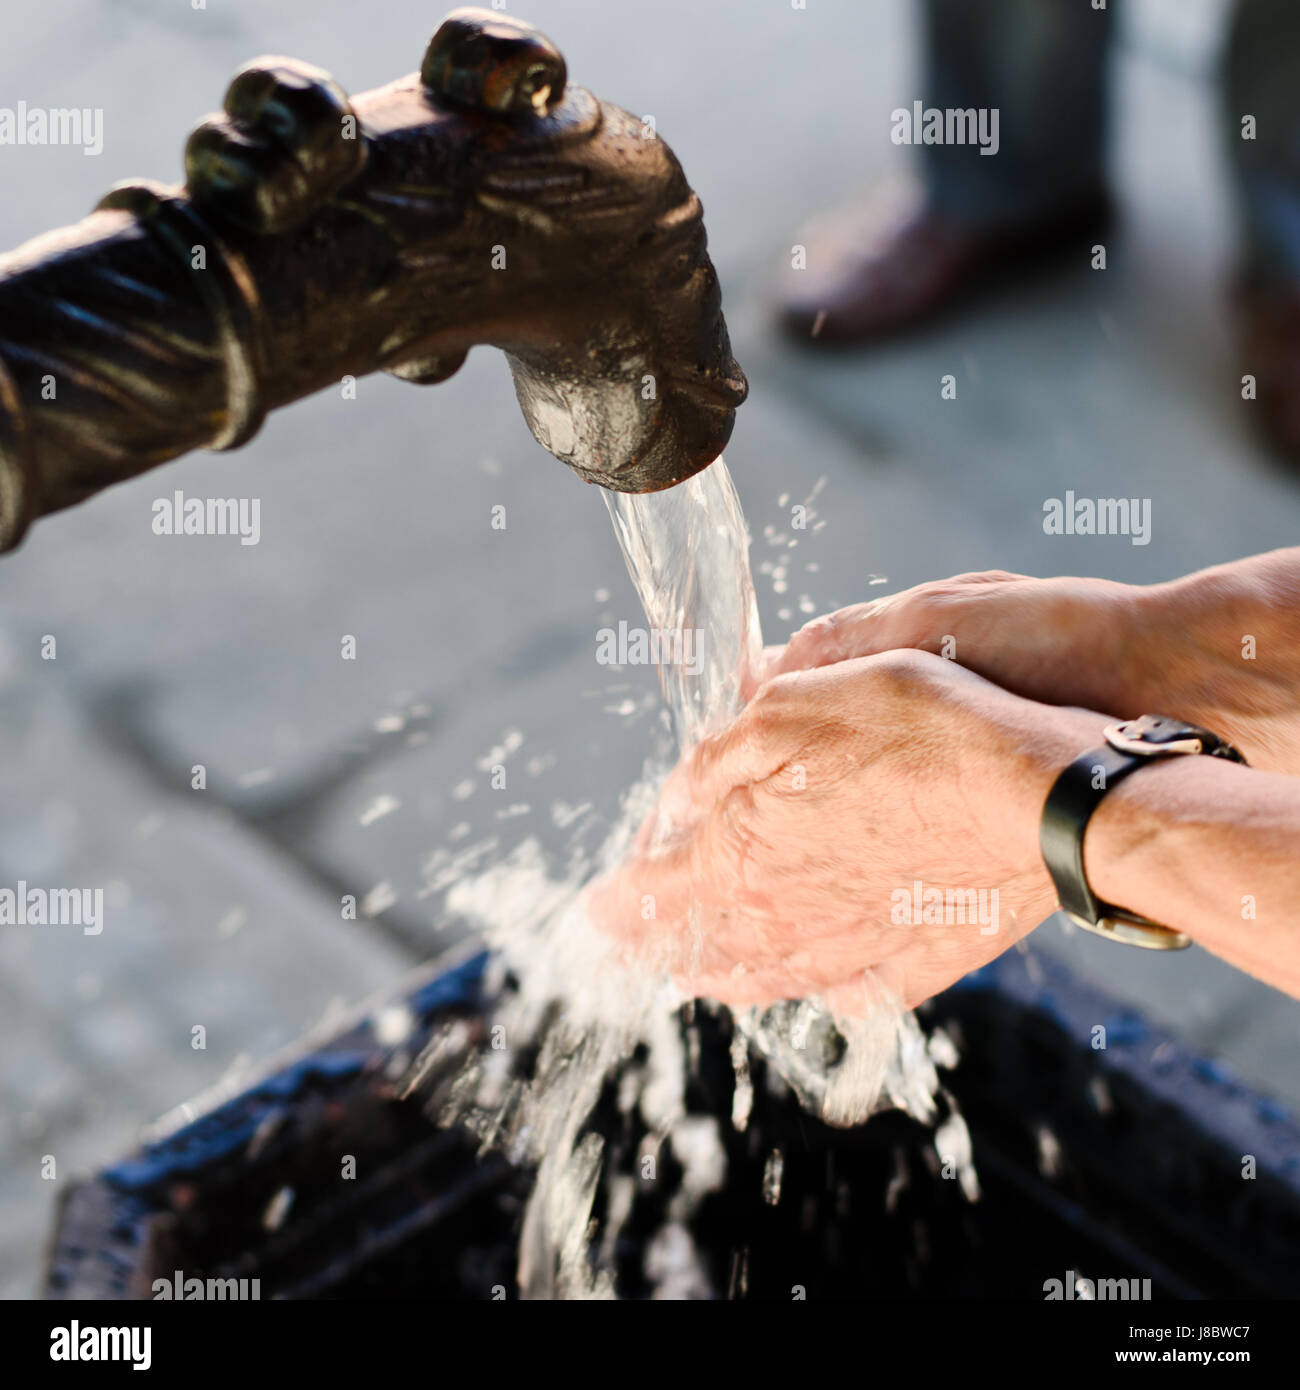 Handwasserpumpe Auf Der Straße Pakistan Stockfoto - Bild von wasser, hand:  191190452